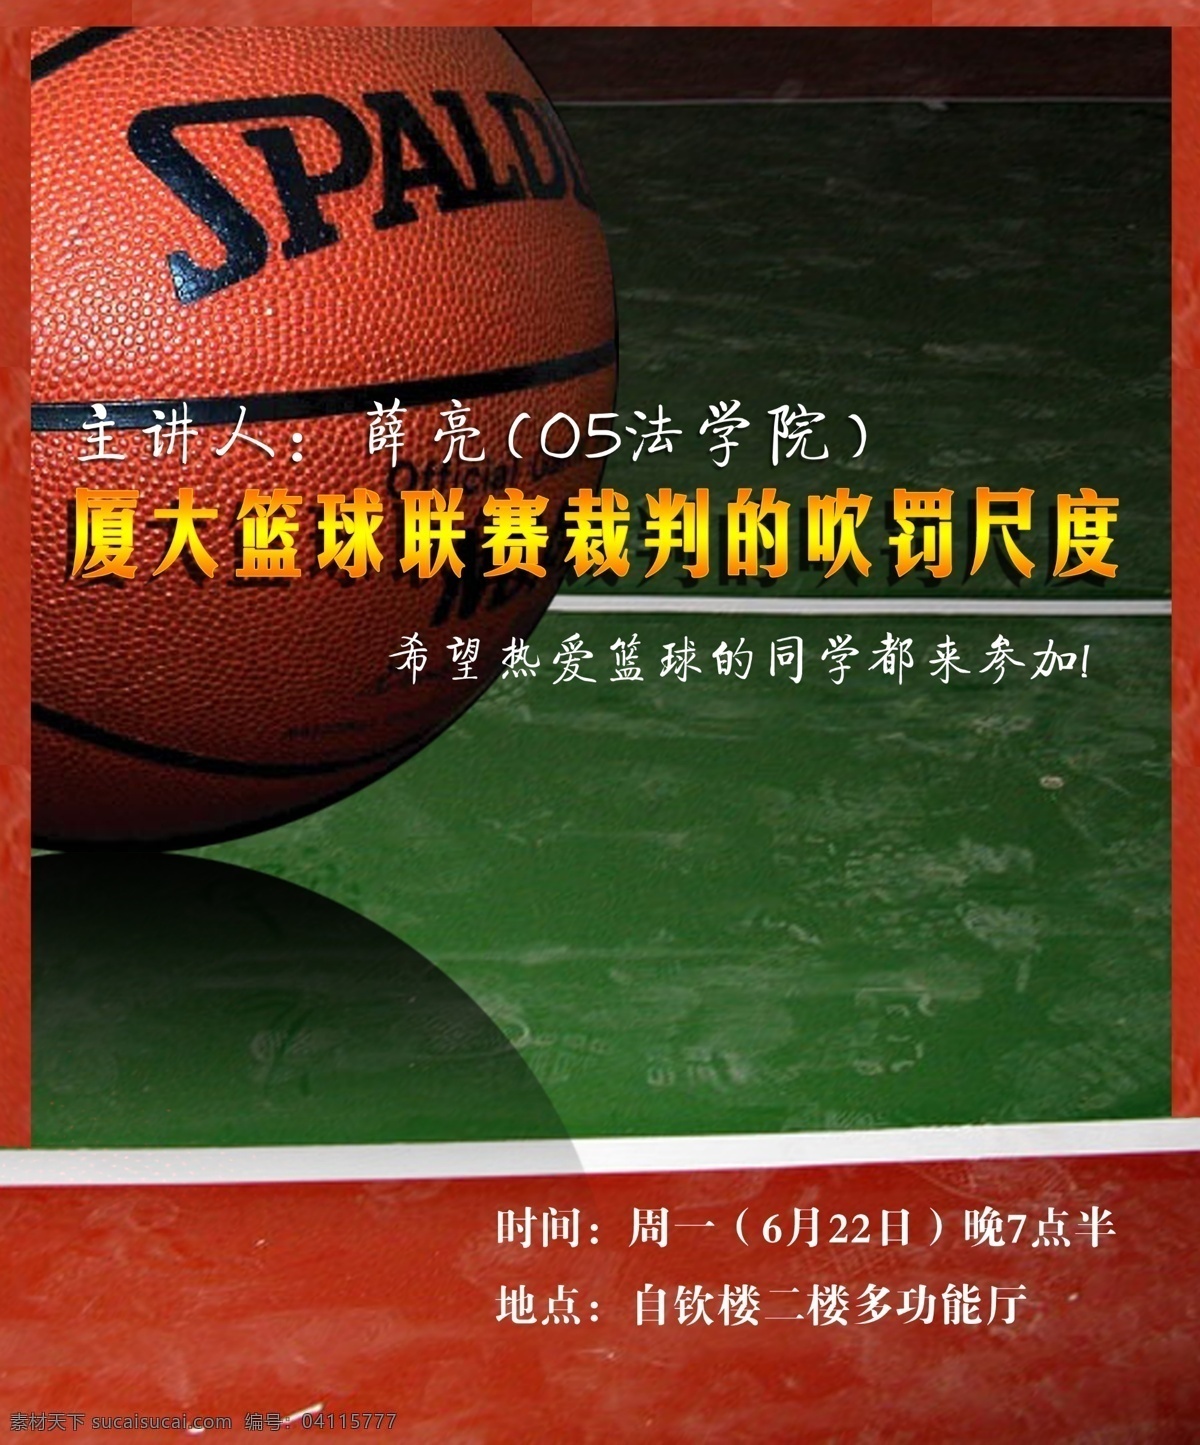 篮球 裁判 分层 ps海报 宣传海报 源文件 模板下载 篮球裁判 psd源文件